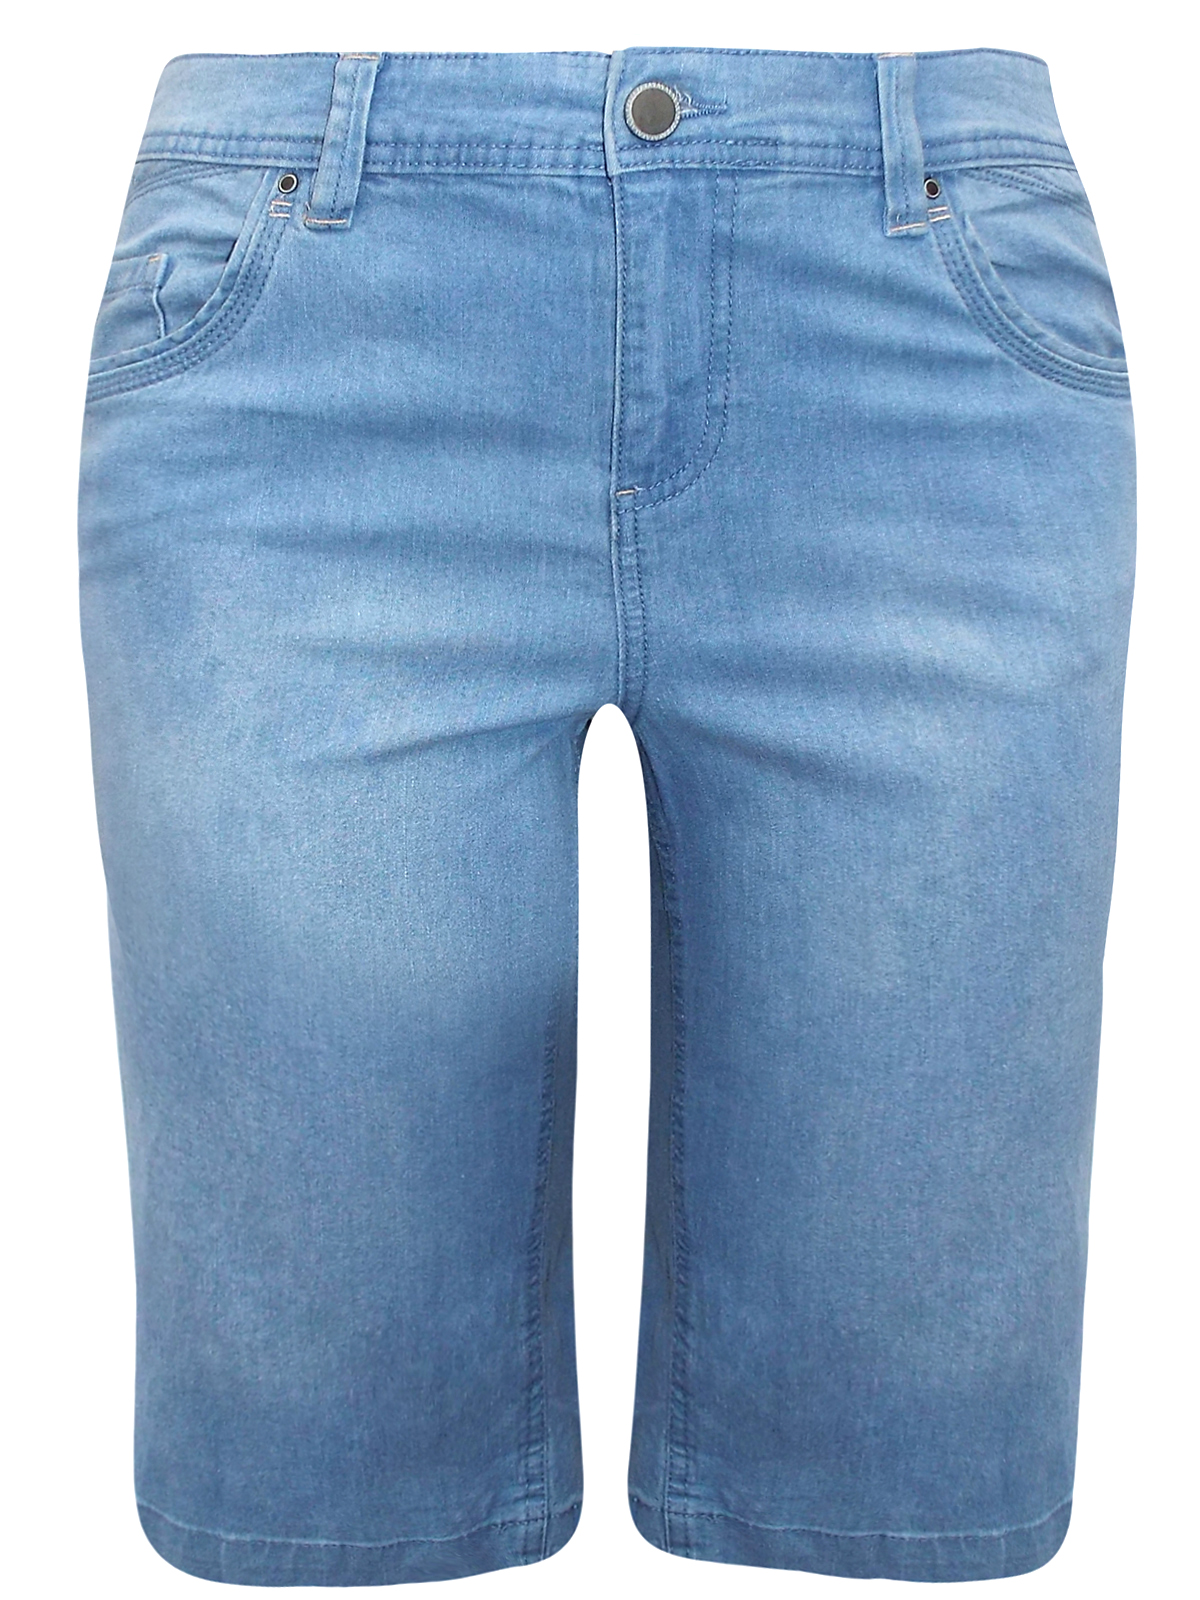 LIGHT-DENIM Cotton Rich Long Denim Shorts - Plus Size 14 to 30